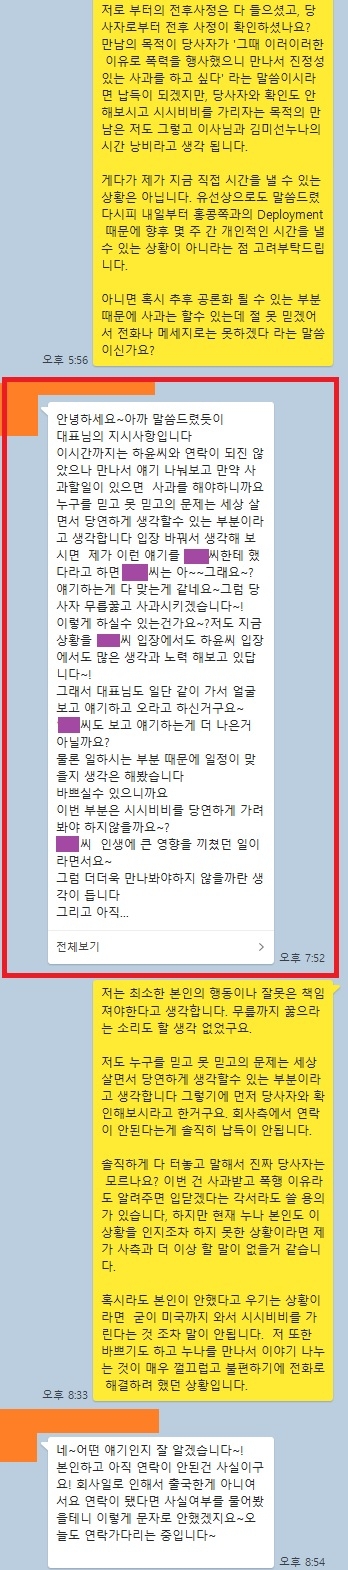 배우 송하윤의 학폭 사건 피해자라고 주장하는 남성의 폭로글. [온라인 커뮤니티 캡처]